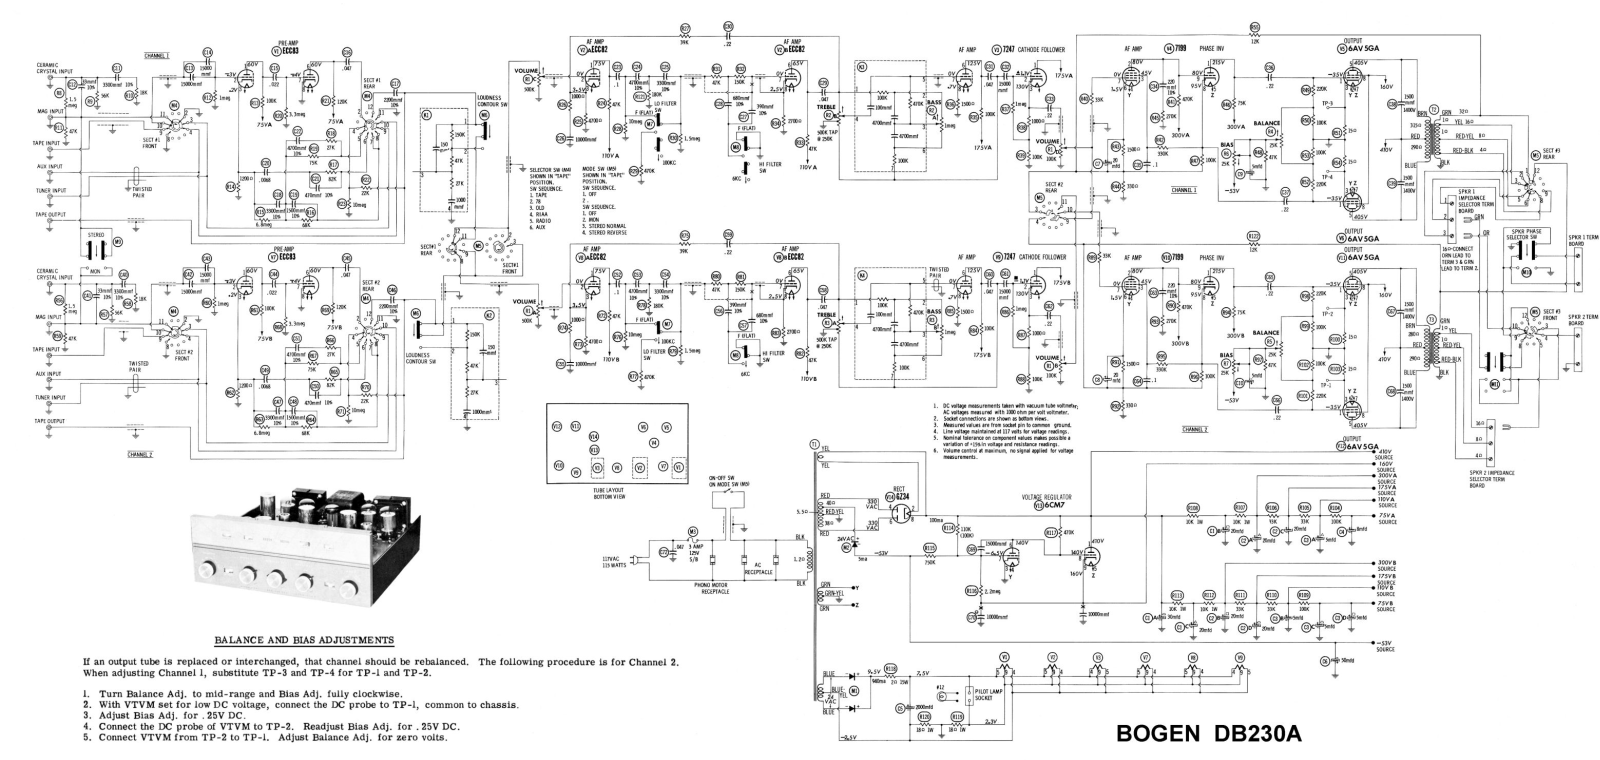 Bogen DB-230-A Schematic